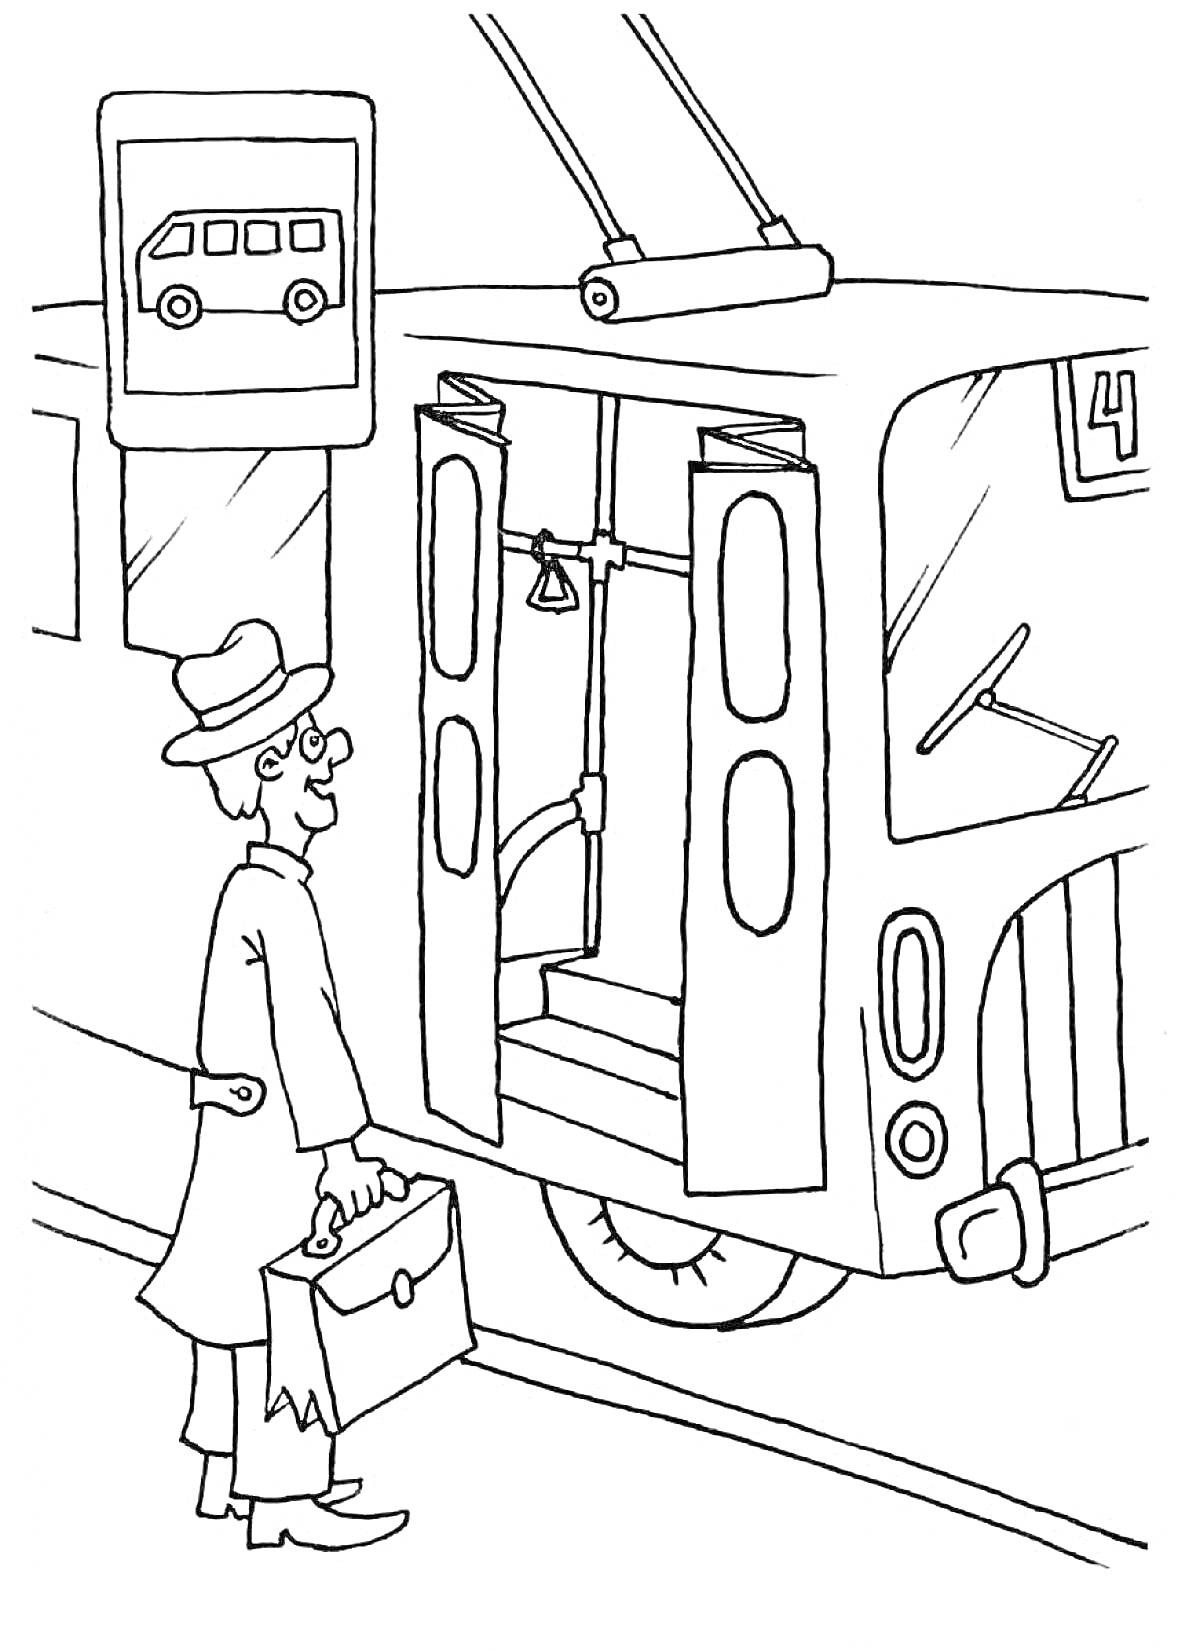 Раскраска Ожидание мужчиной трамвая рядом с дорожным знаком остановки трамвая